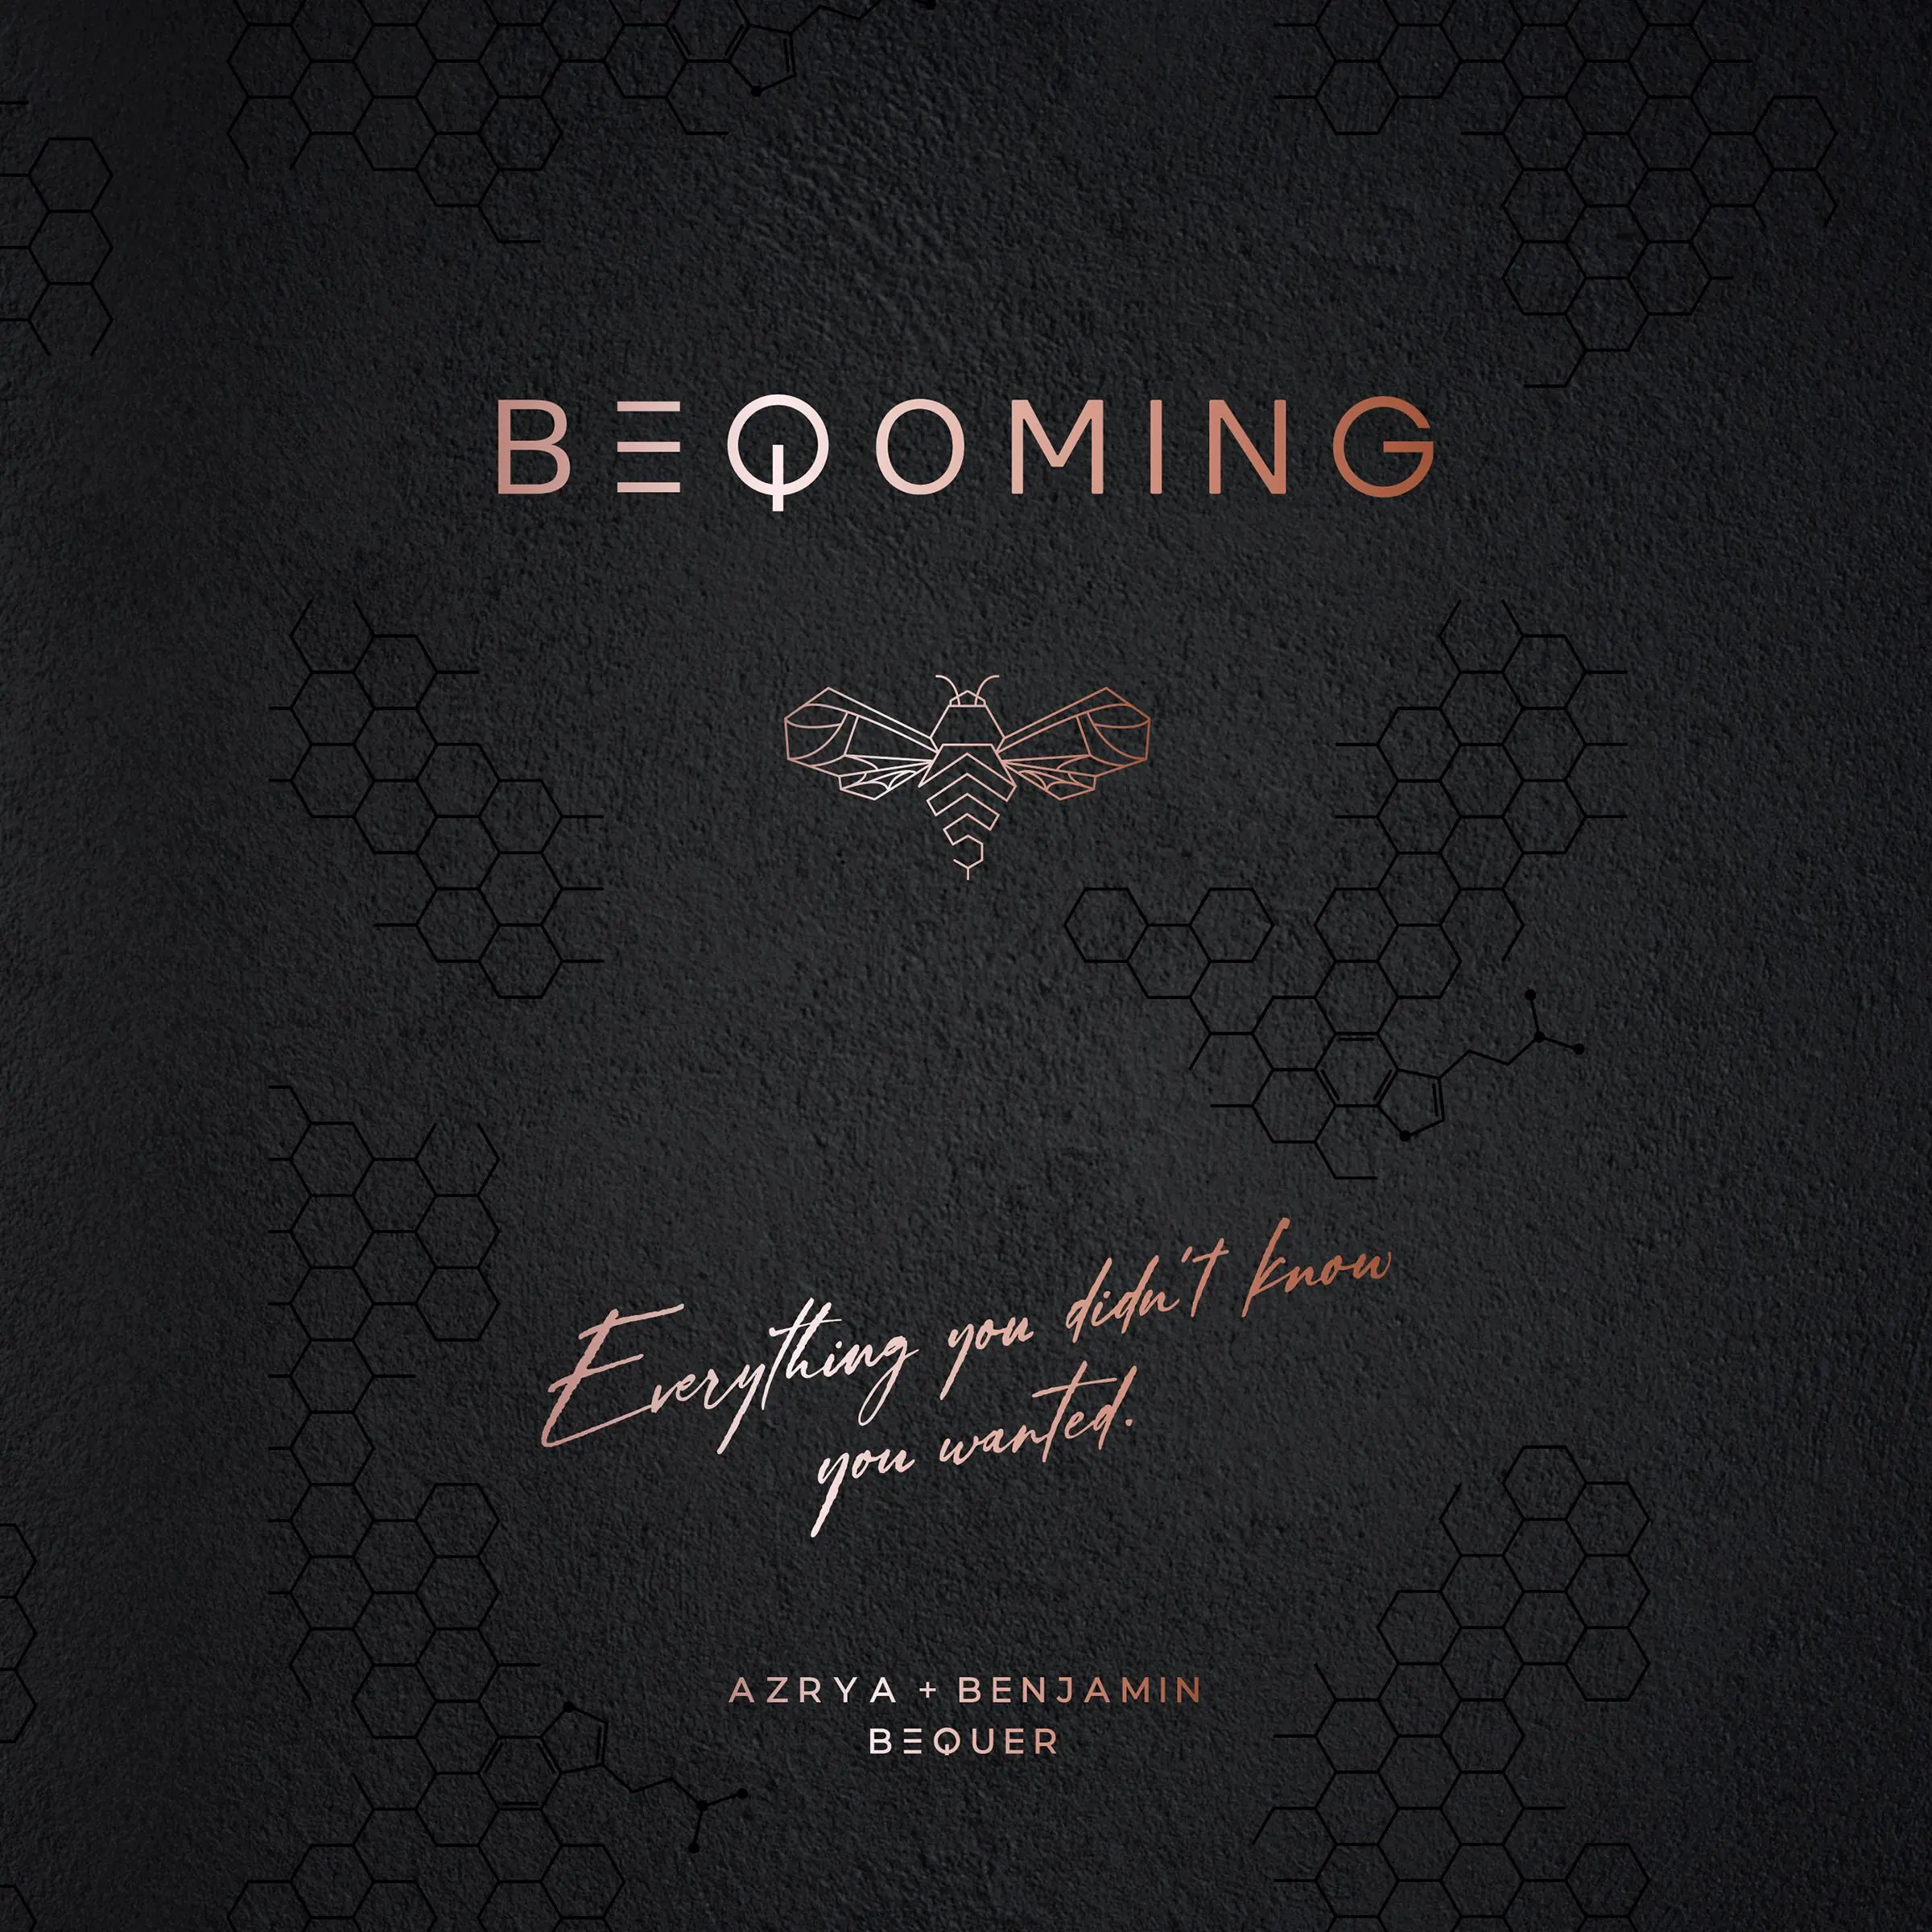 Beqoming Audiobook by Benjamin Bequer